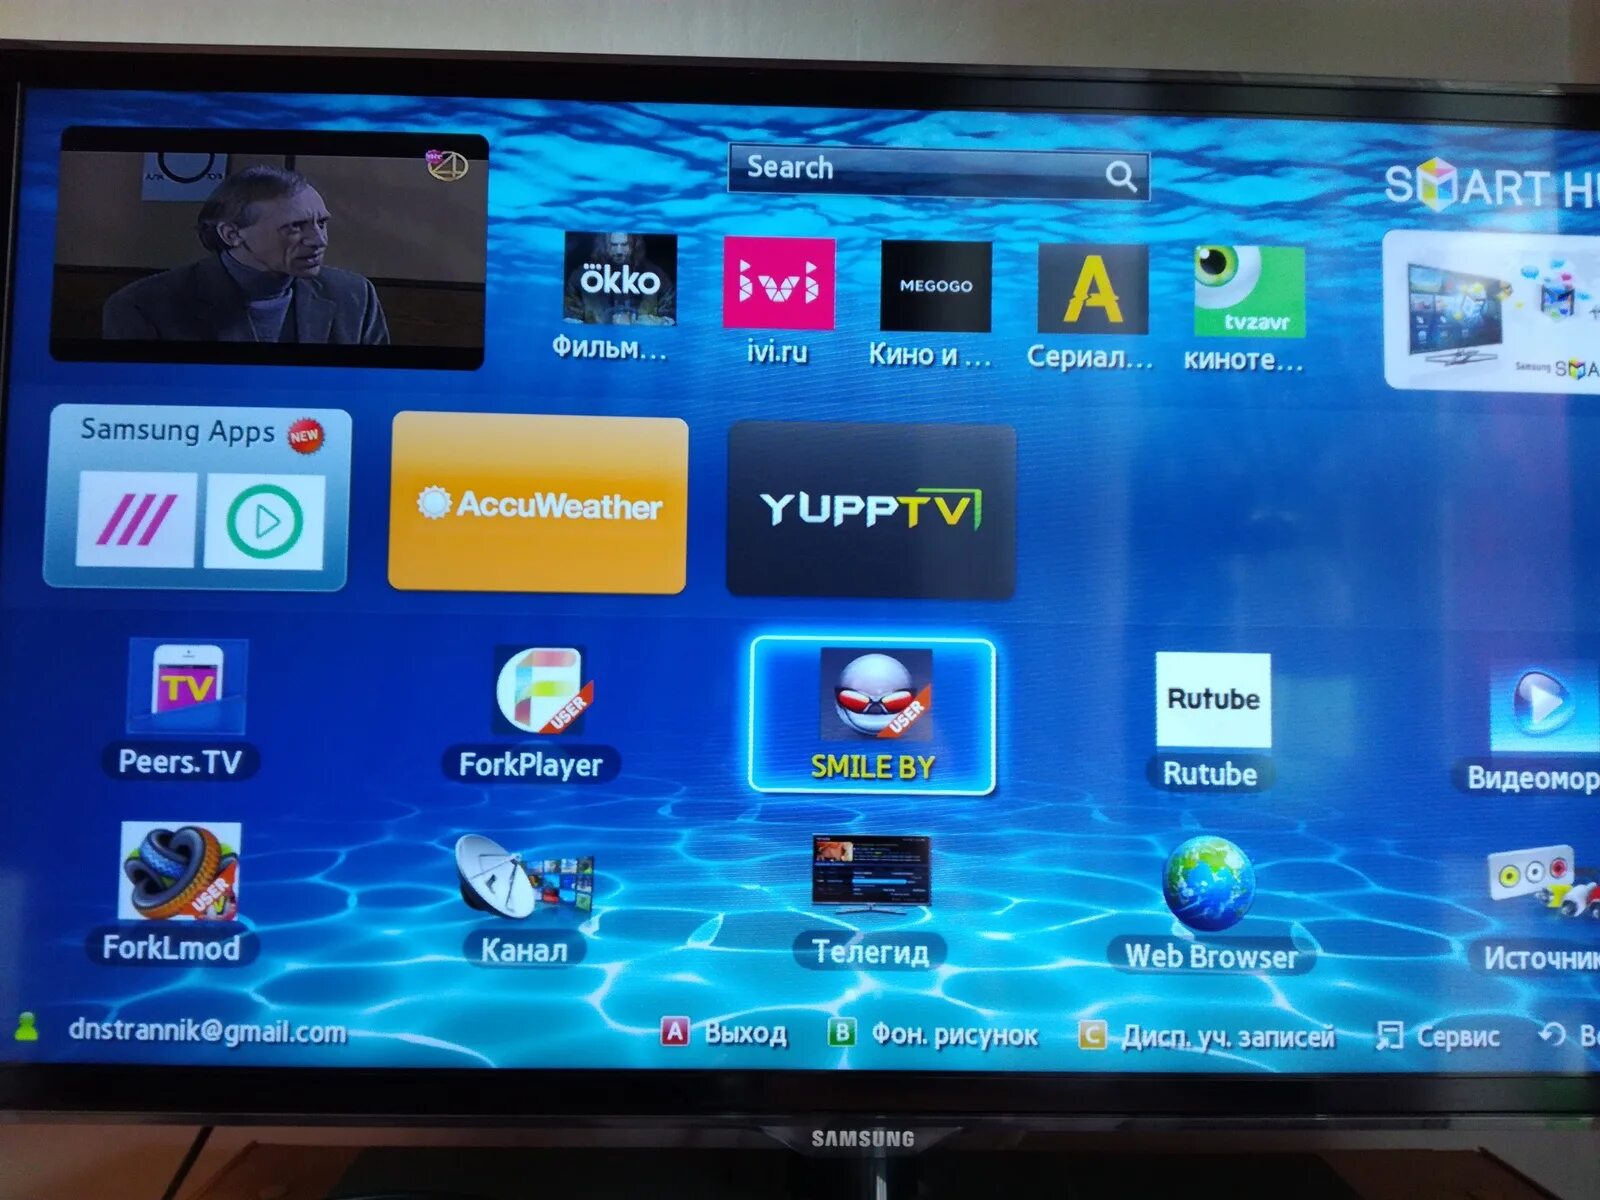 Тв приложение для телевизора самсунг. Телевизор Samsung смарт ТВ каналы. Samsung apps для Smart TV. Телевизор самсунг не смарт ТВ. ТВ приставка самсунг смарт ТВ.